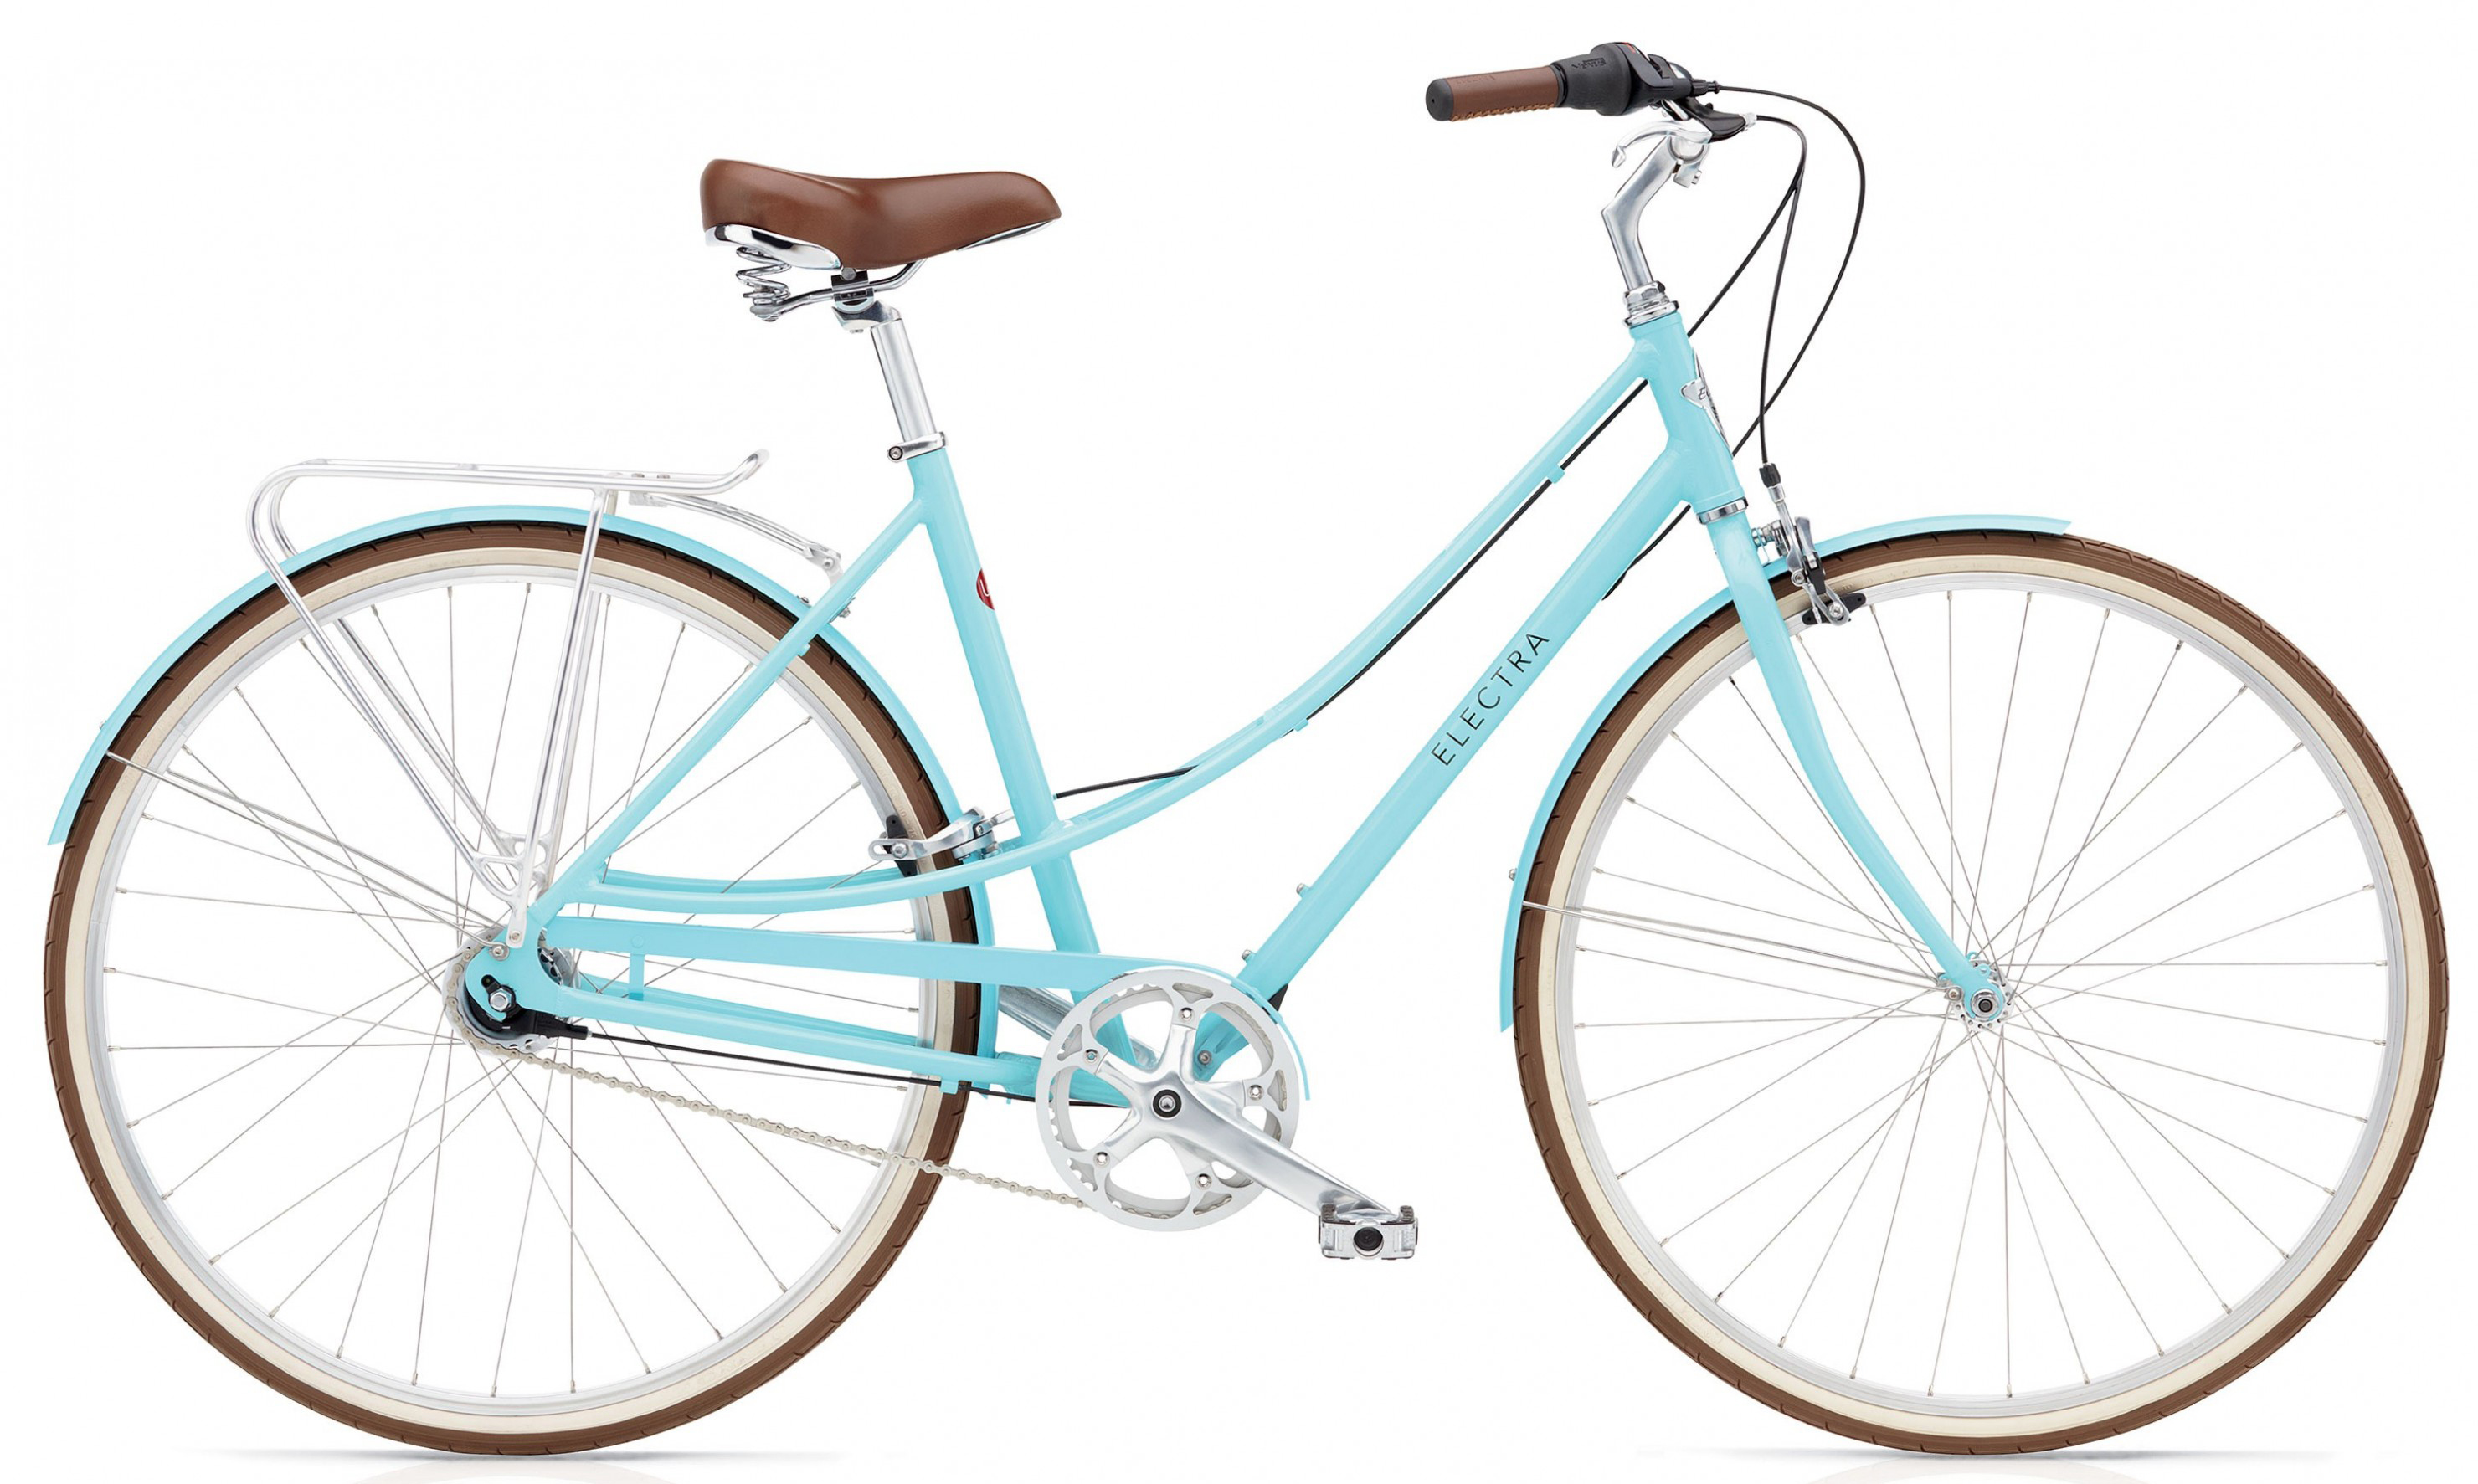  Отзывы о Женском велосипеде Electra Loft 7i 2019